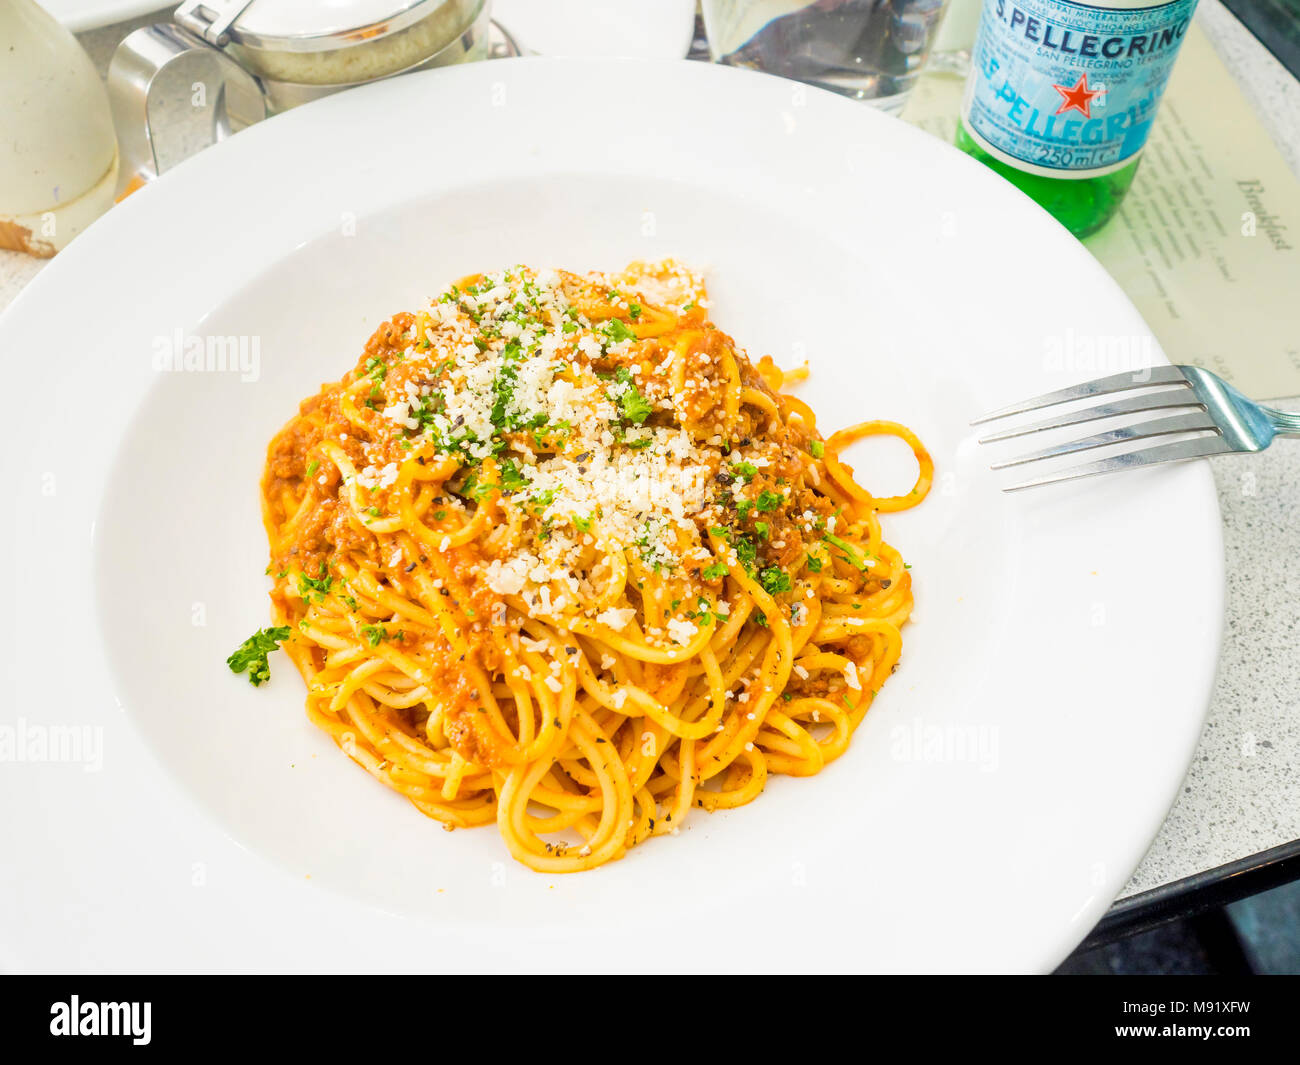 Italienisches Restaurant Hauptgericht Spaghetti Bolognese mit Parmesan, schwarzer Pfeffer und S. Pellegrino Mineralwasser Stockfoto